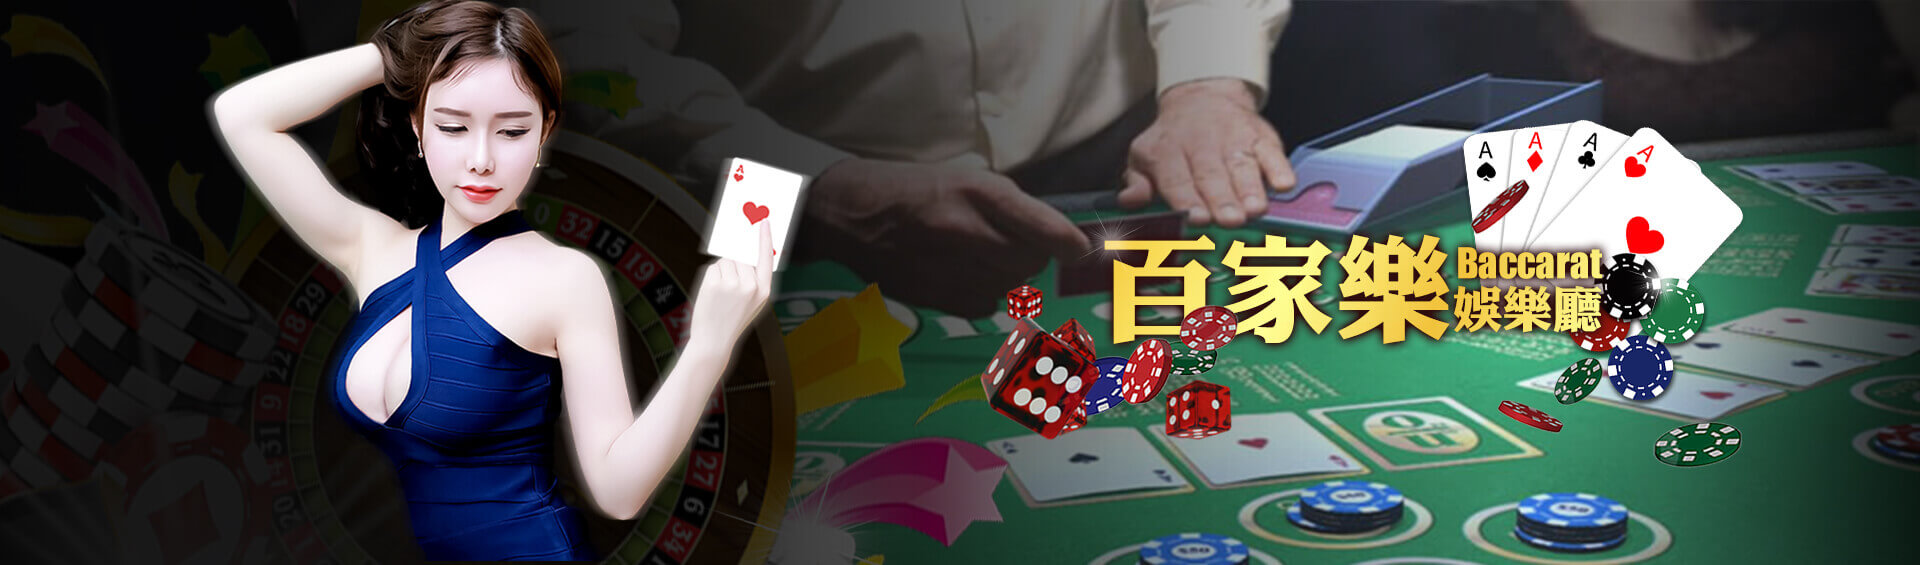 LEO下載撲克遊戲多種玩法線上迅速湊桌免費送娛樂城體驗金